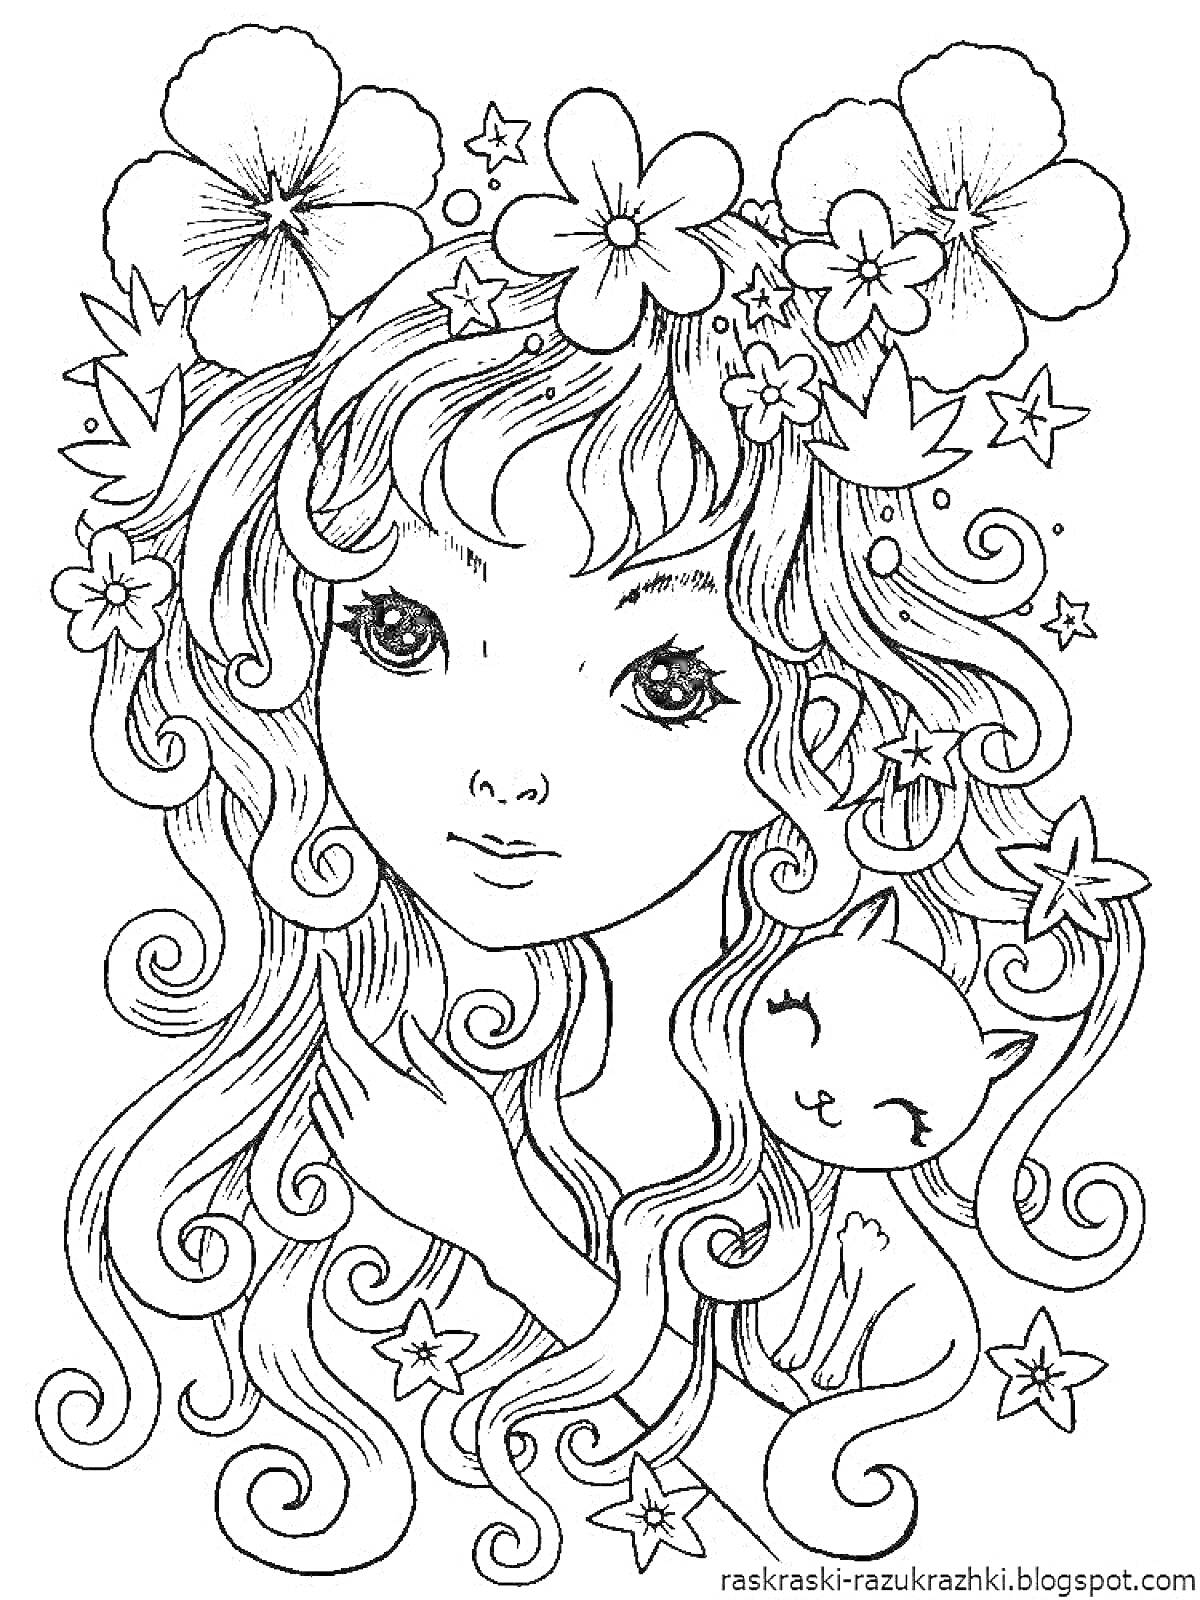 Раскраска Девушка с длинными волнистыми волосами, украшенными цветами и звездами, и котенок